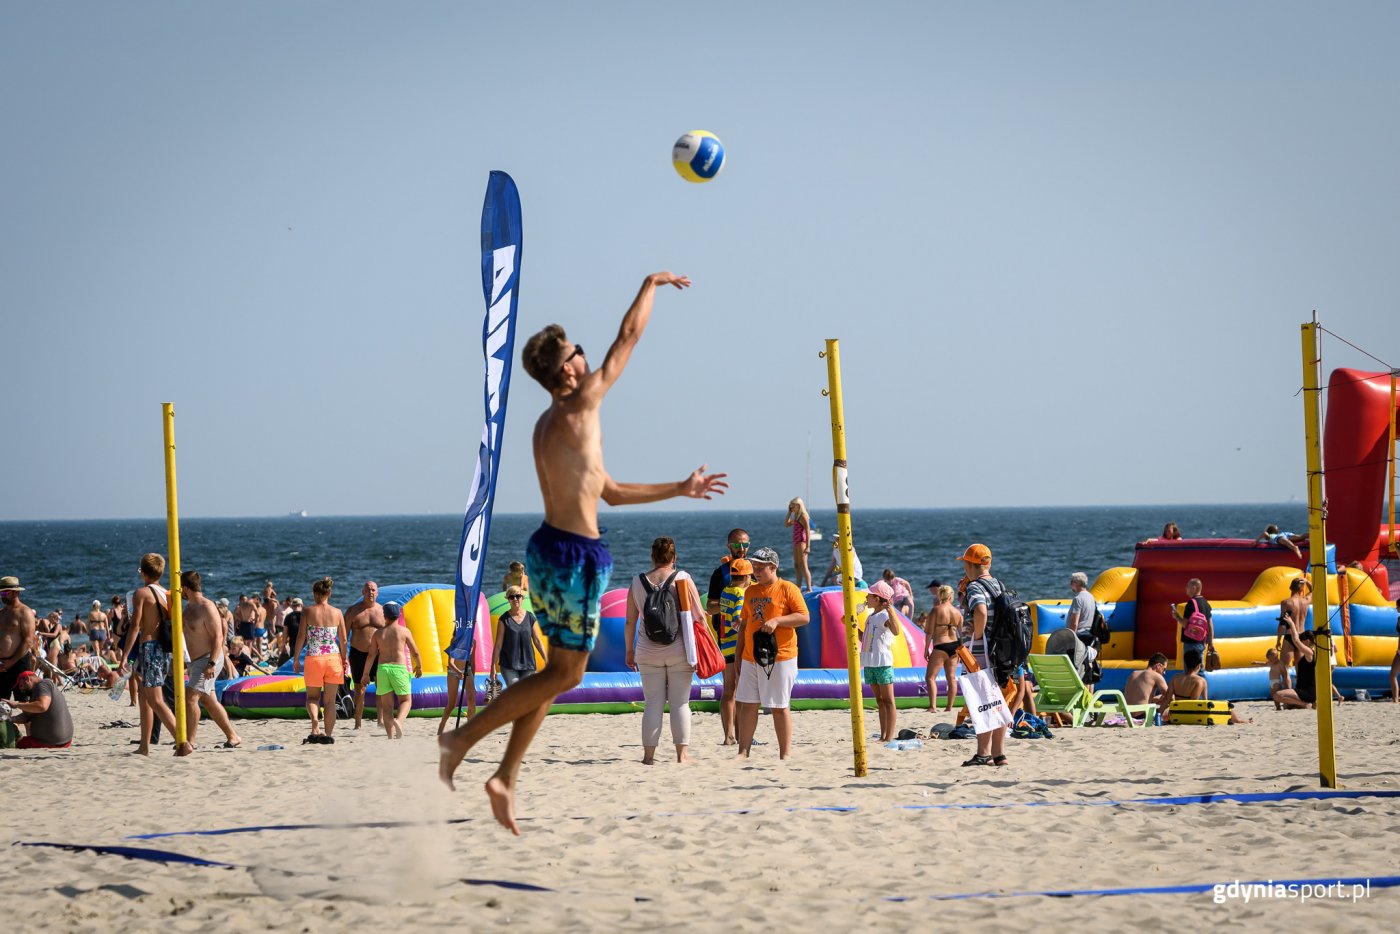 Sezon wakacyjnych wydarzeń sportowych na plaży Gdynia Śródmieście tradycyjnie zapowiada się imponująco